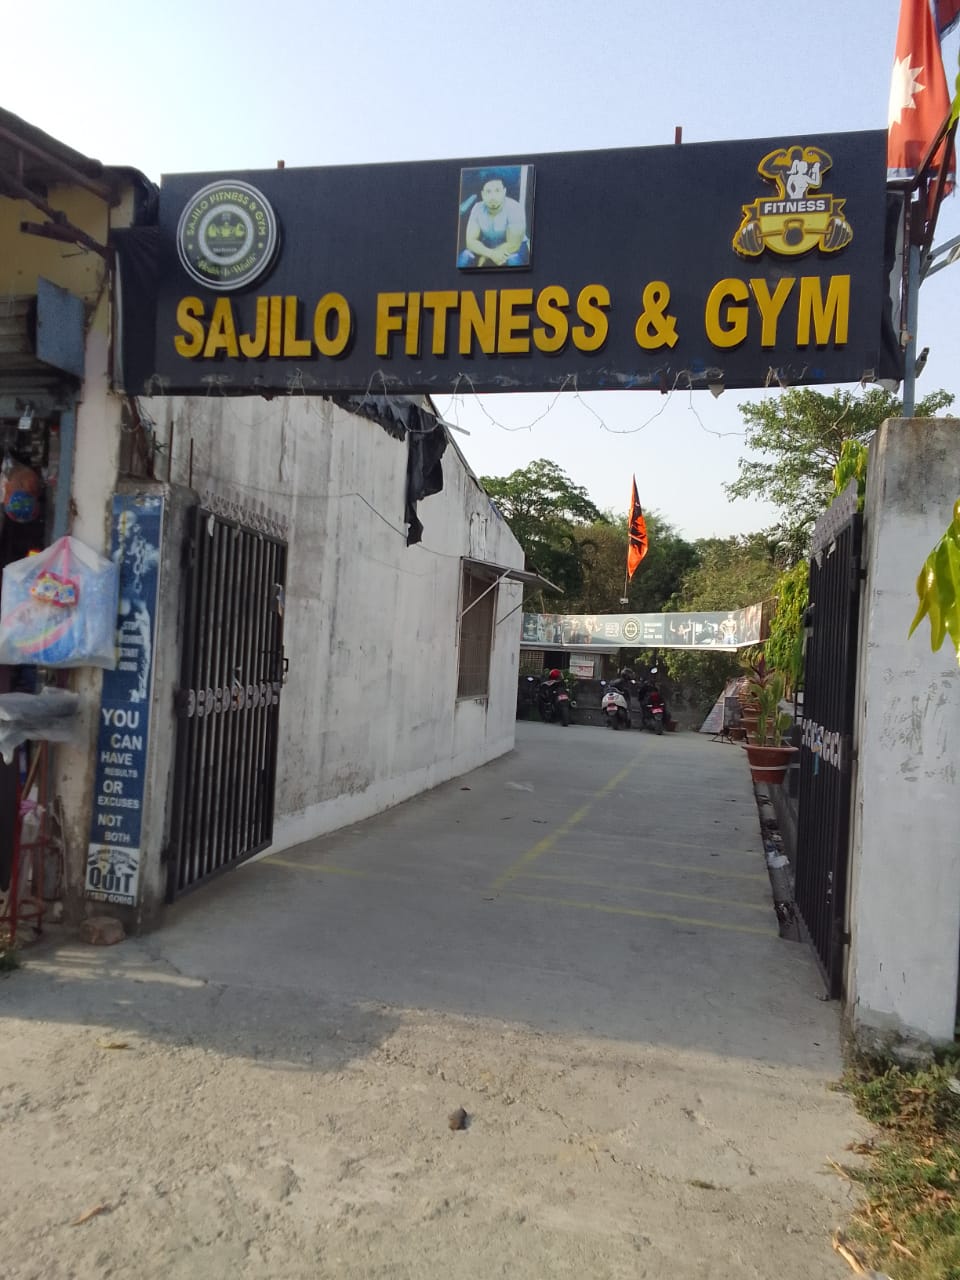 Sajilo fitness and gym